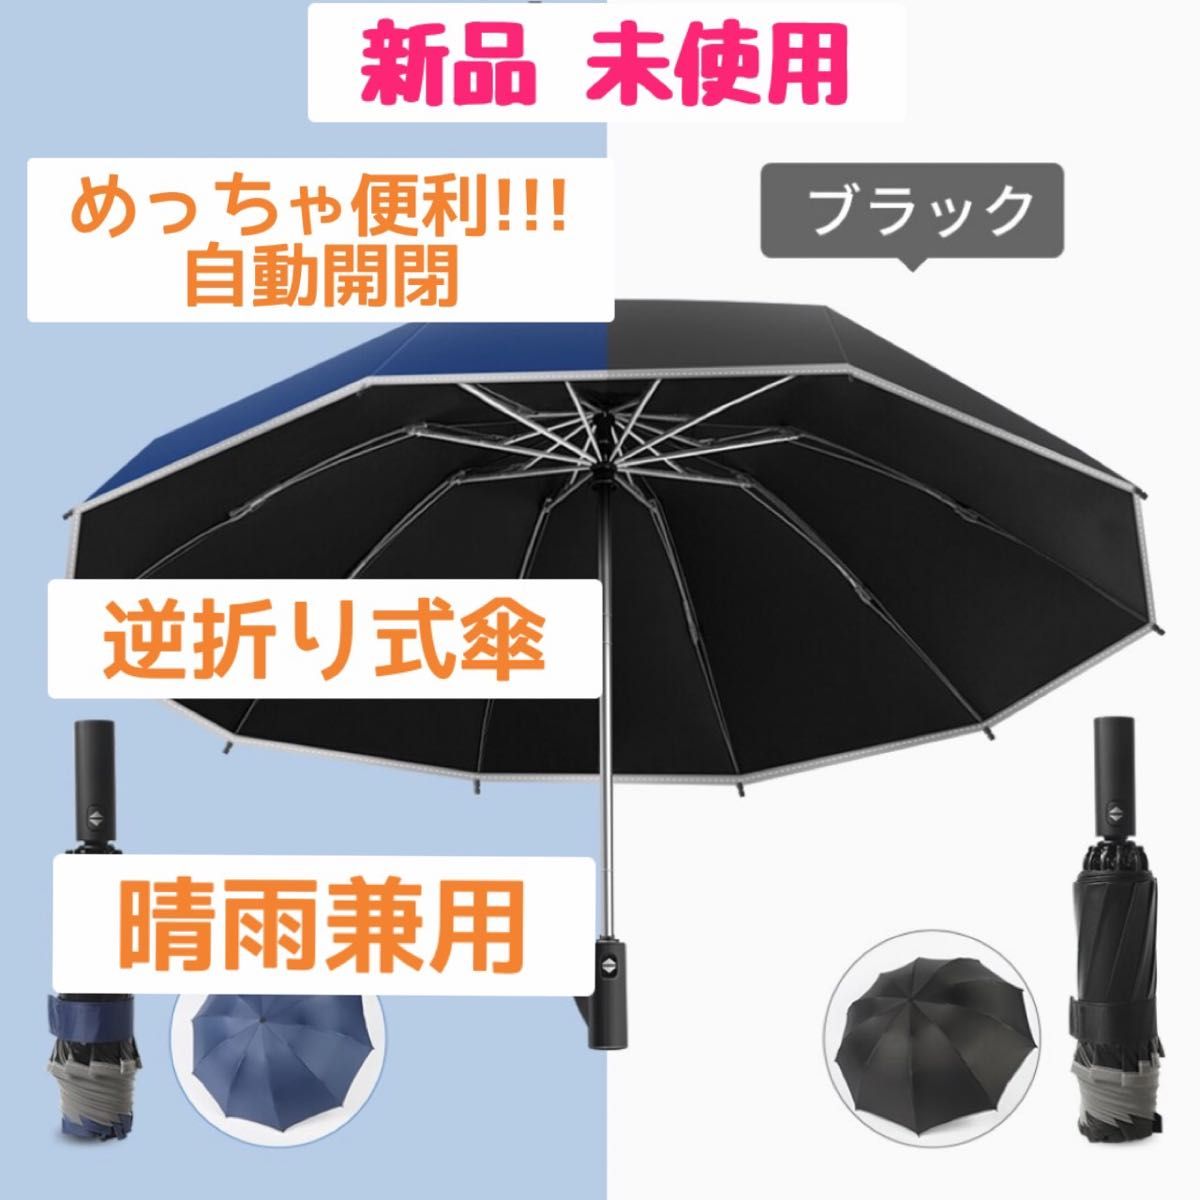 ◆新品 未使用◆簡単ワンタッチ 折りたたみ傘 10本骨 軽量 男女兼用 晴雨兼用 自動 折り畳み傘 ワンタッチ 超軽量 日傘